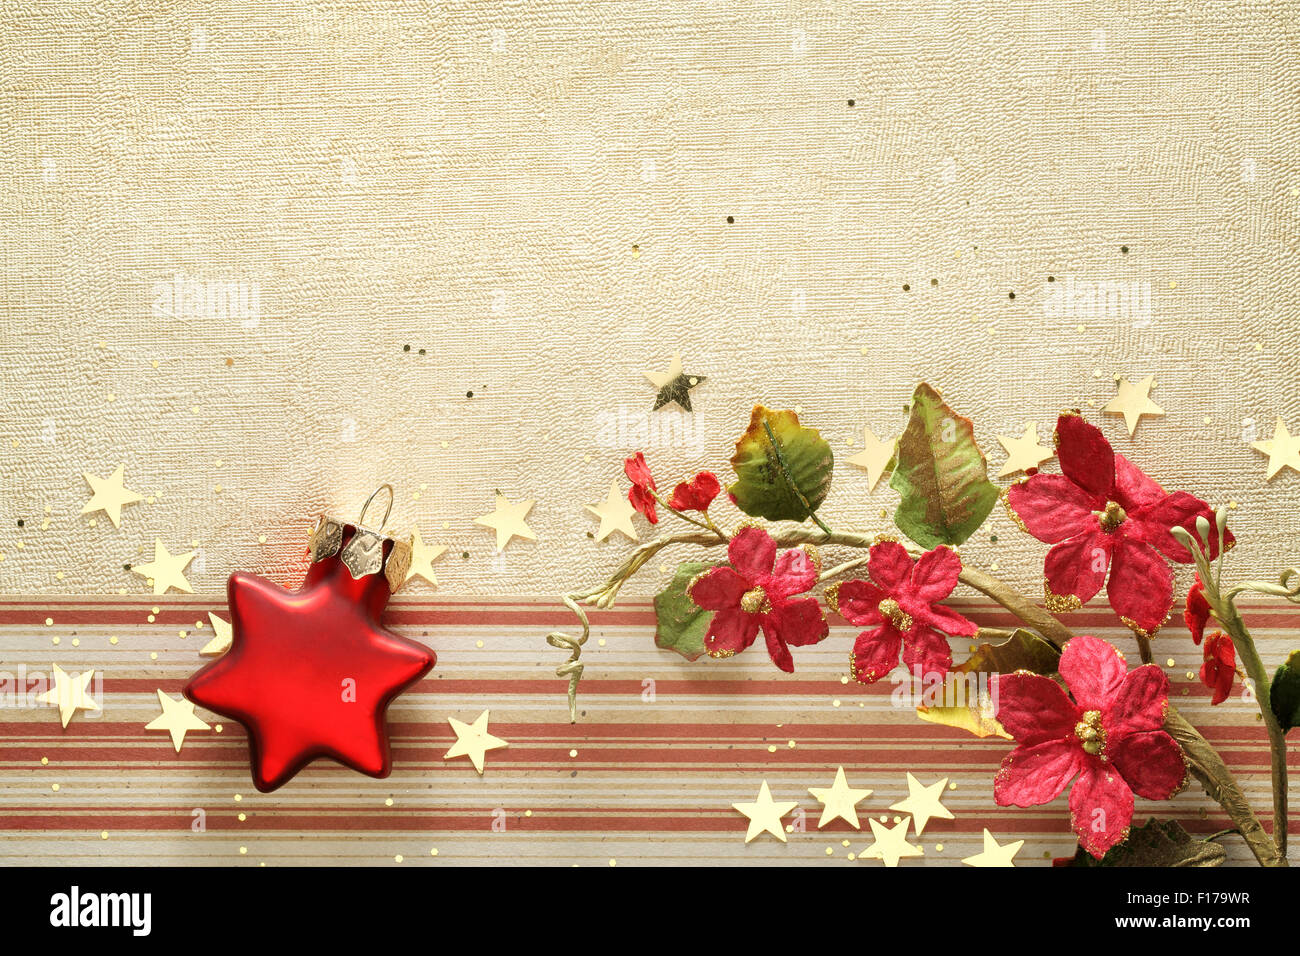 Weihnachts-Dekorationen auf goldenem Hintergrund Stockfoto